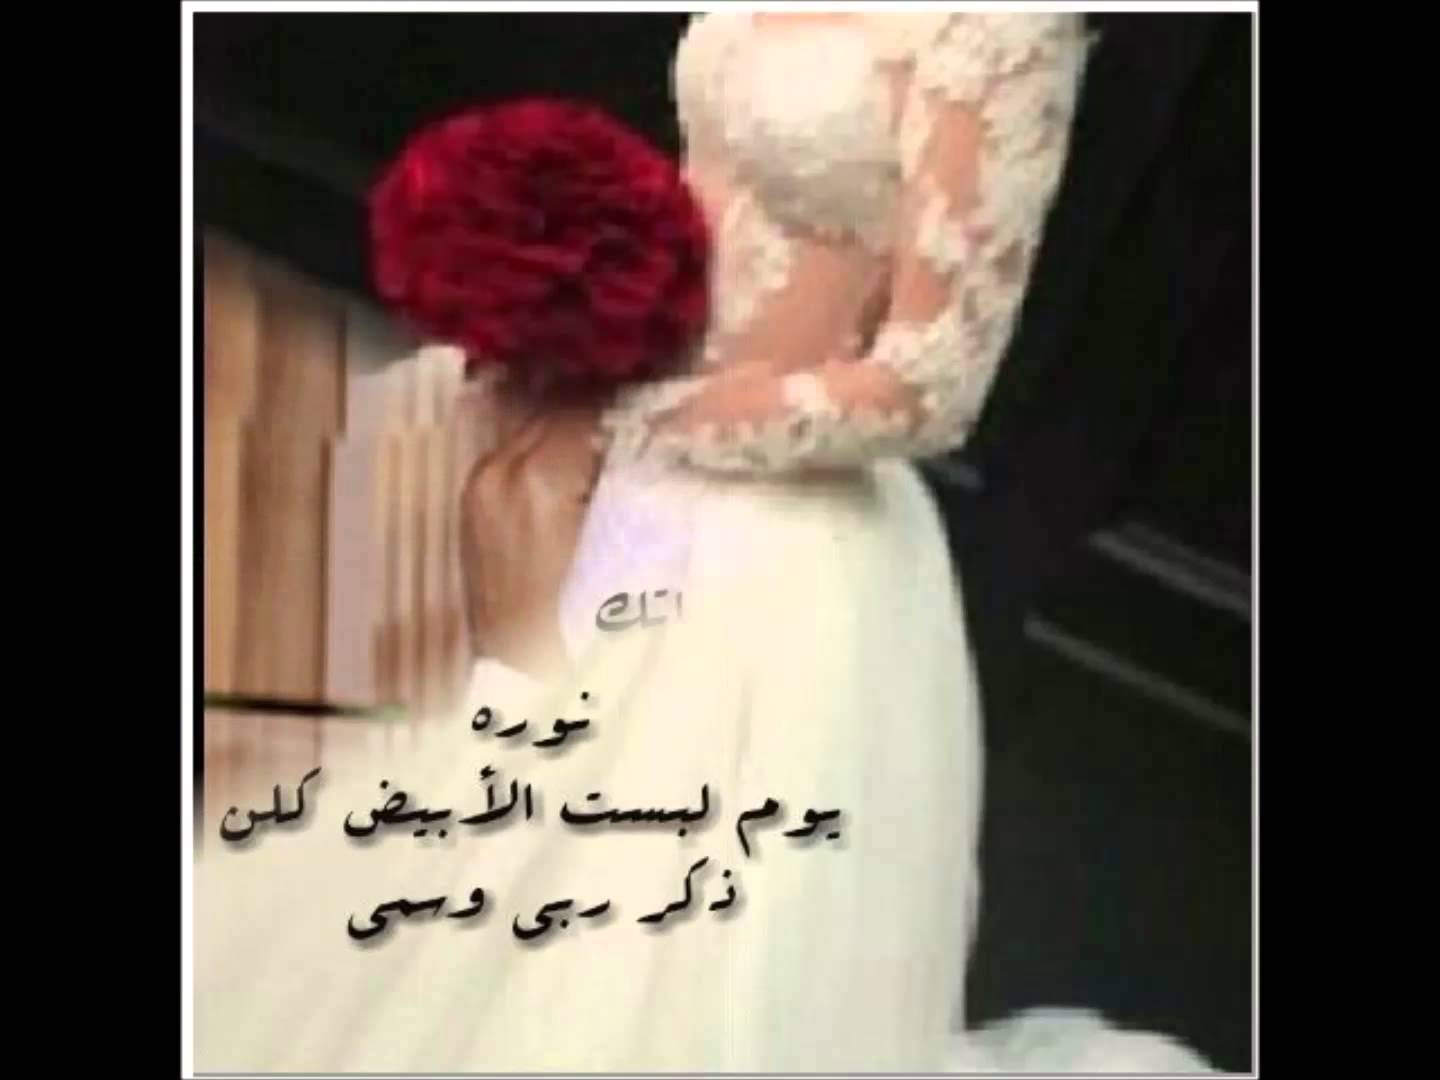 5977 4 كلمات للعروس من صديقتها - الصداقه والفرح بصديقتى العروسه جولى سحيمان